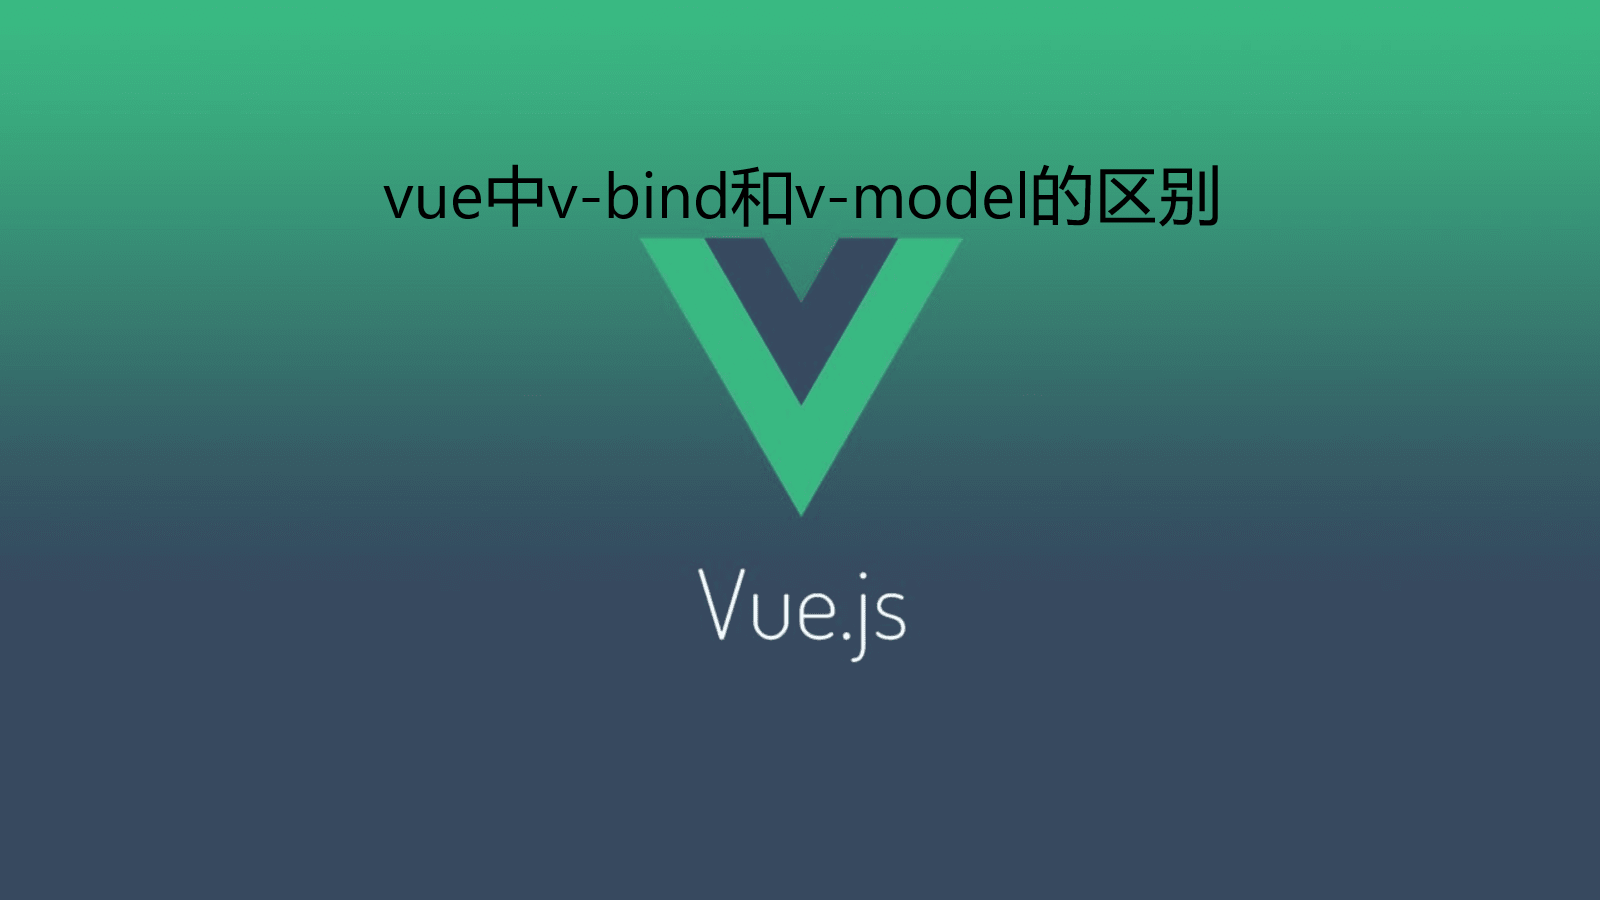 vue中v-bind和v-model的区别？